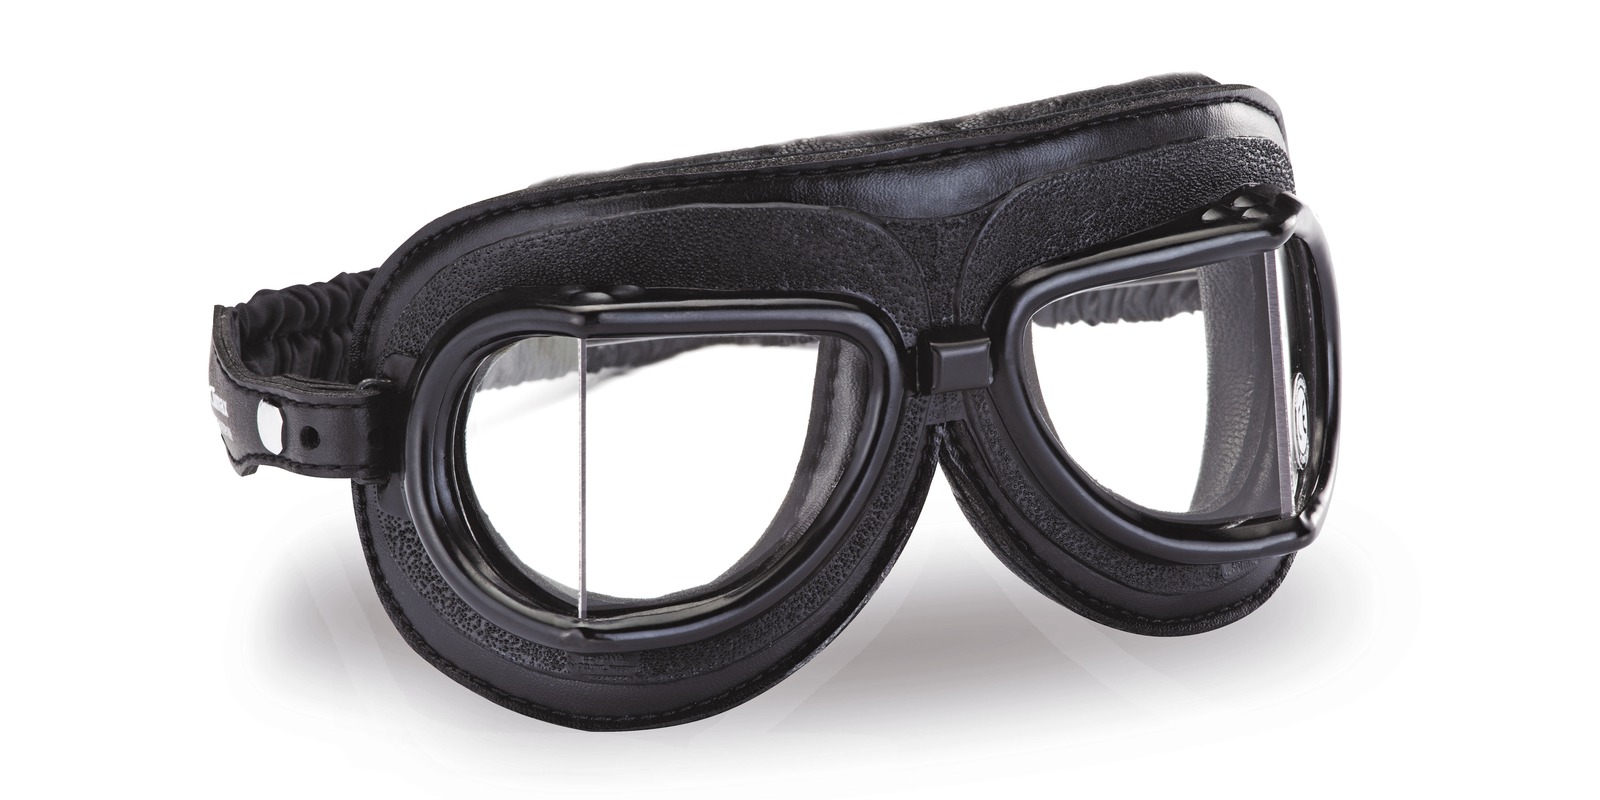 Obrázek produktu Vintage brýle 513, CLIMAX (černé/černý rámeček/čirá skla) 513-N